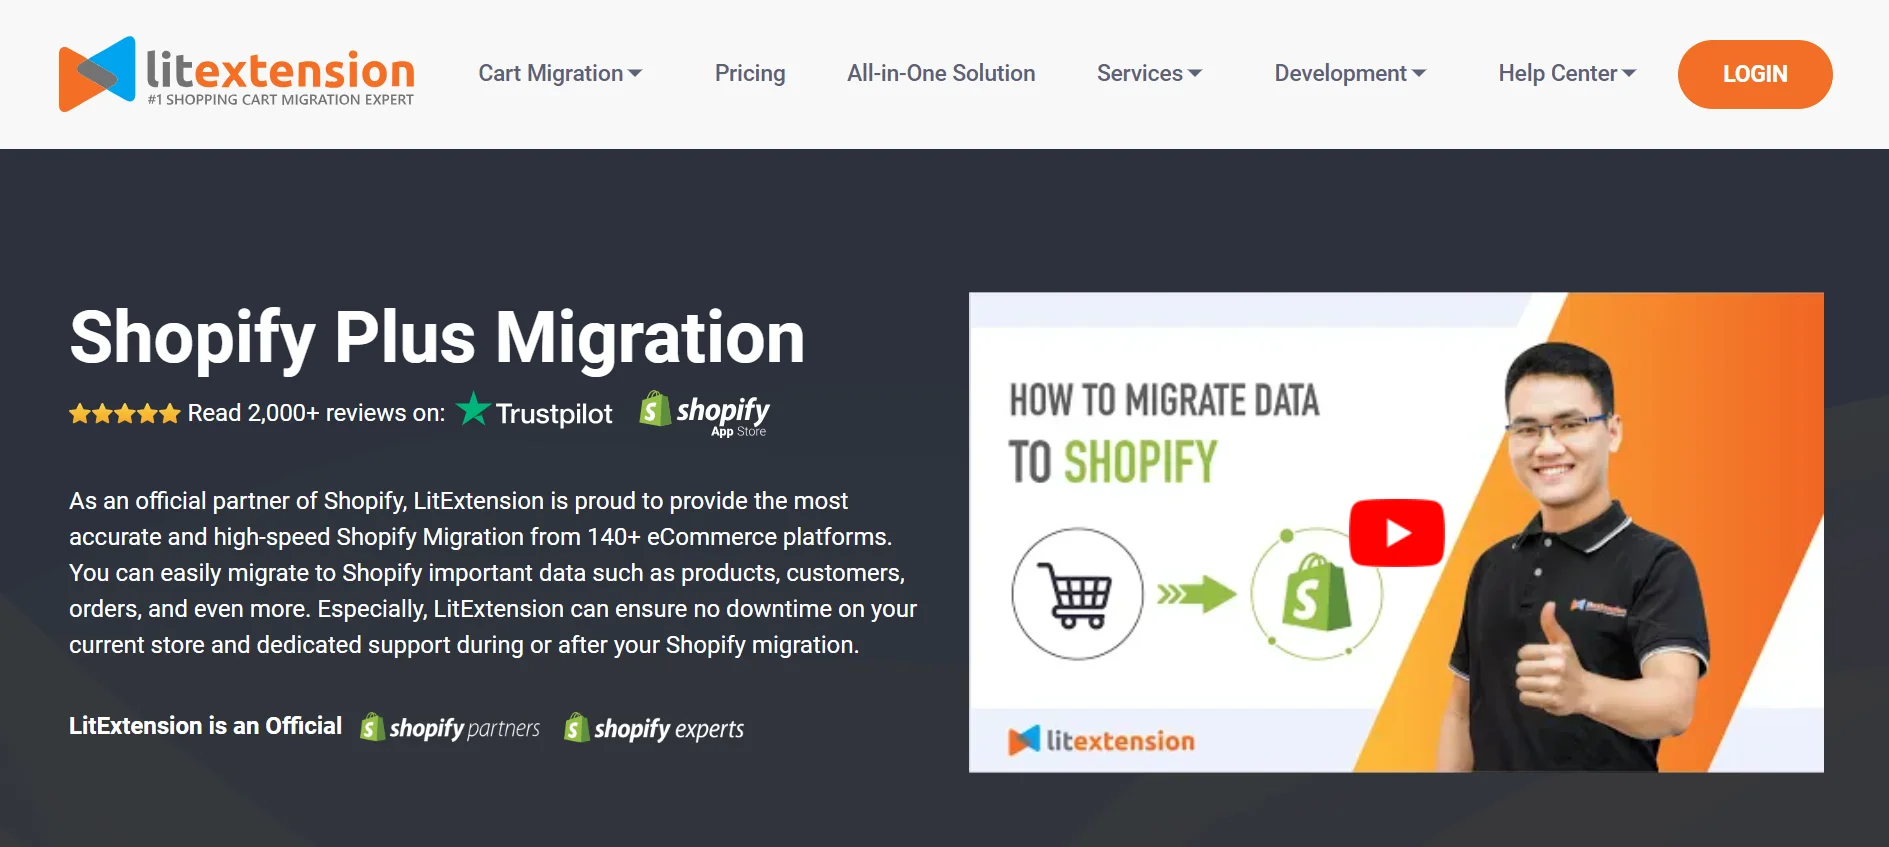 LitExtension’s Shopify Plus migration